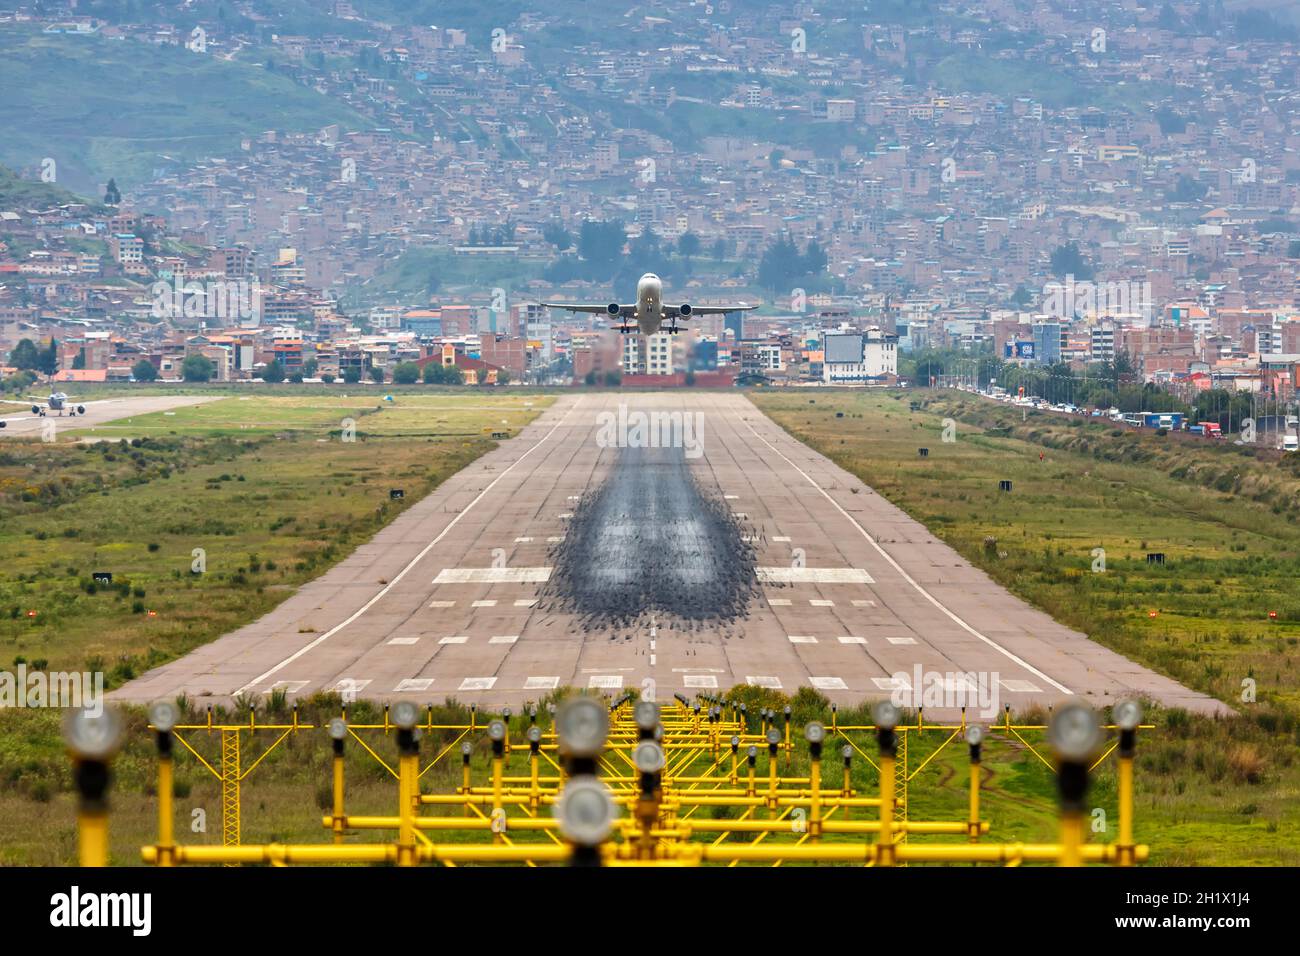 Cuzco, Peru - February 2, 2019: Airplane and runway at Cuzco Airport (CUZ) in Peru. Stock Photo